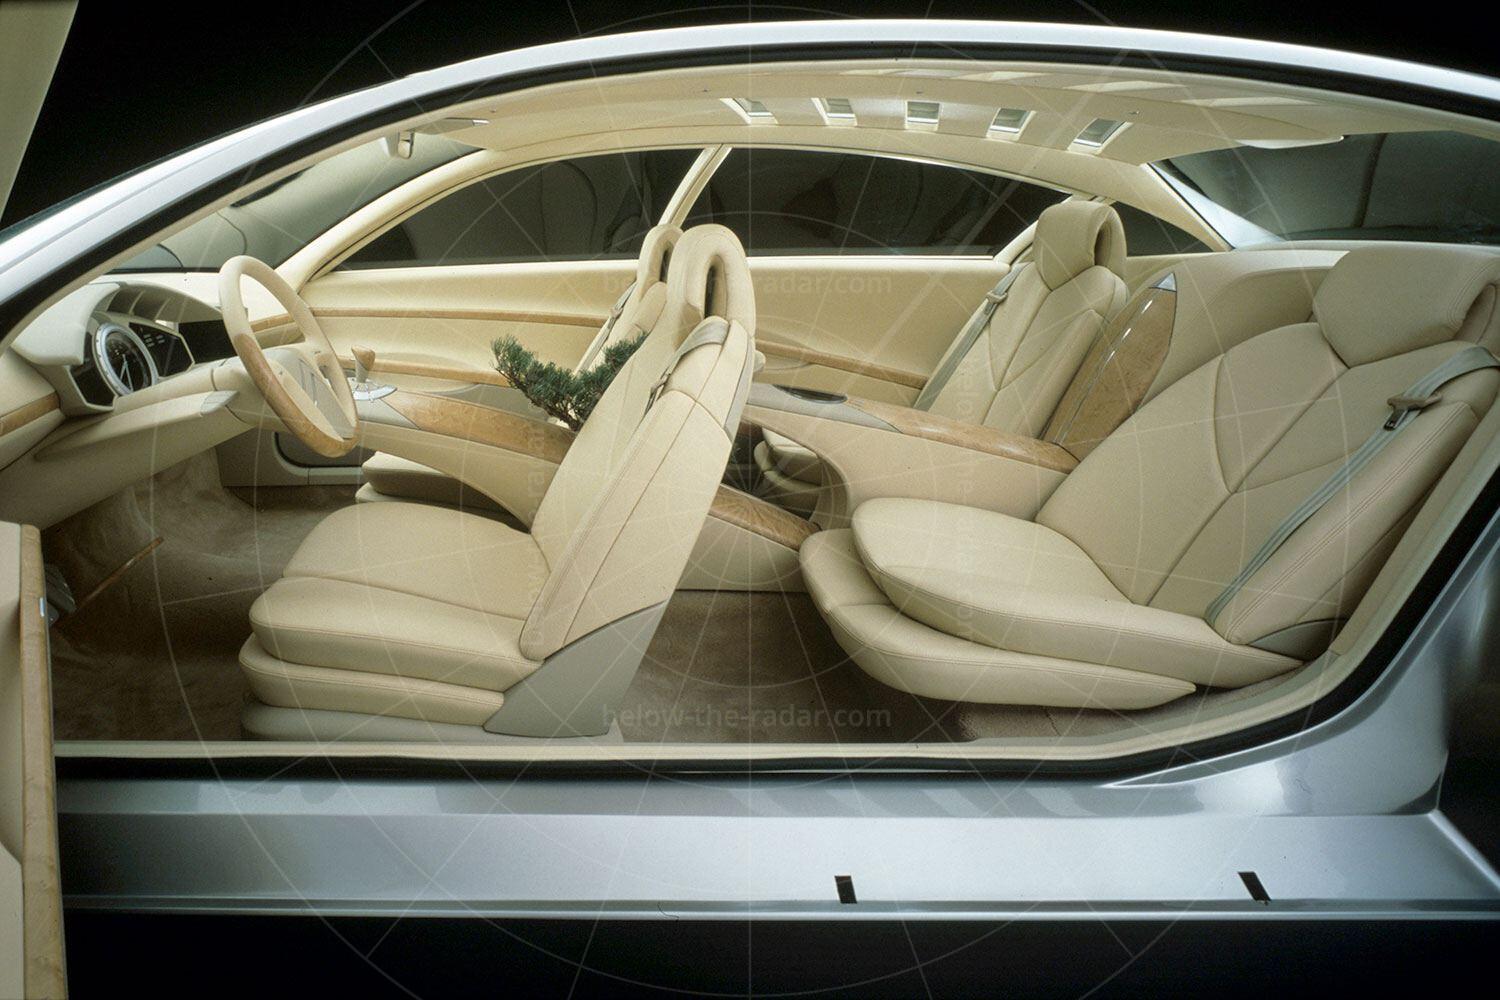 Citroen C6 Lignage interior Pic: Citroen | Citroen C6 Lignage interior